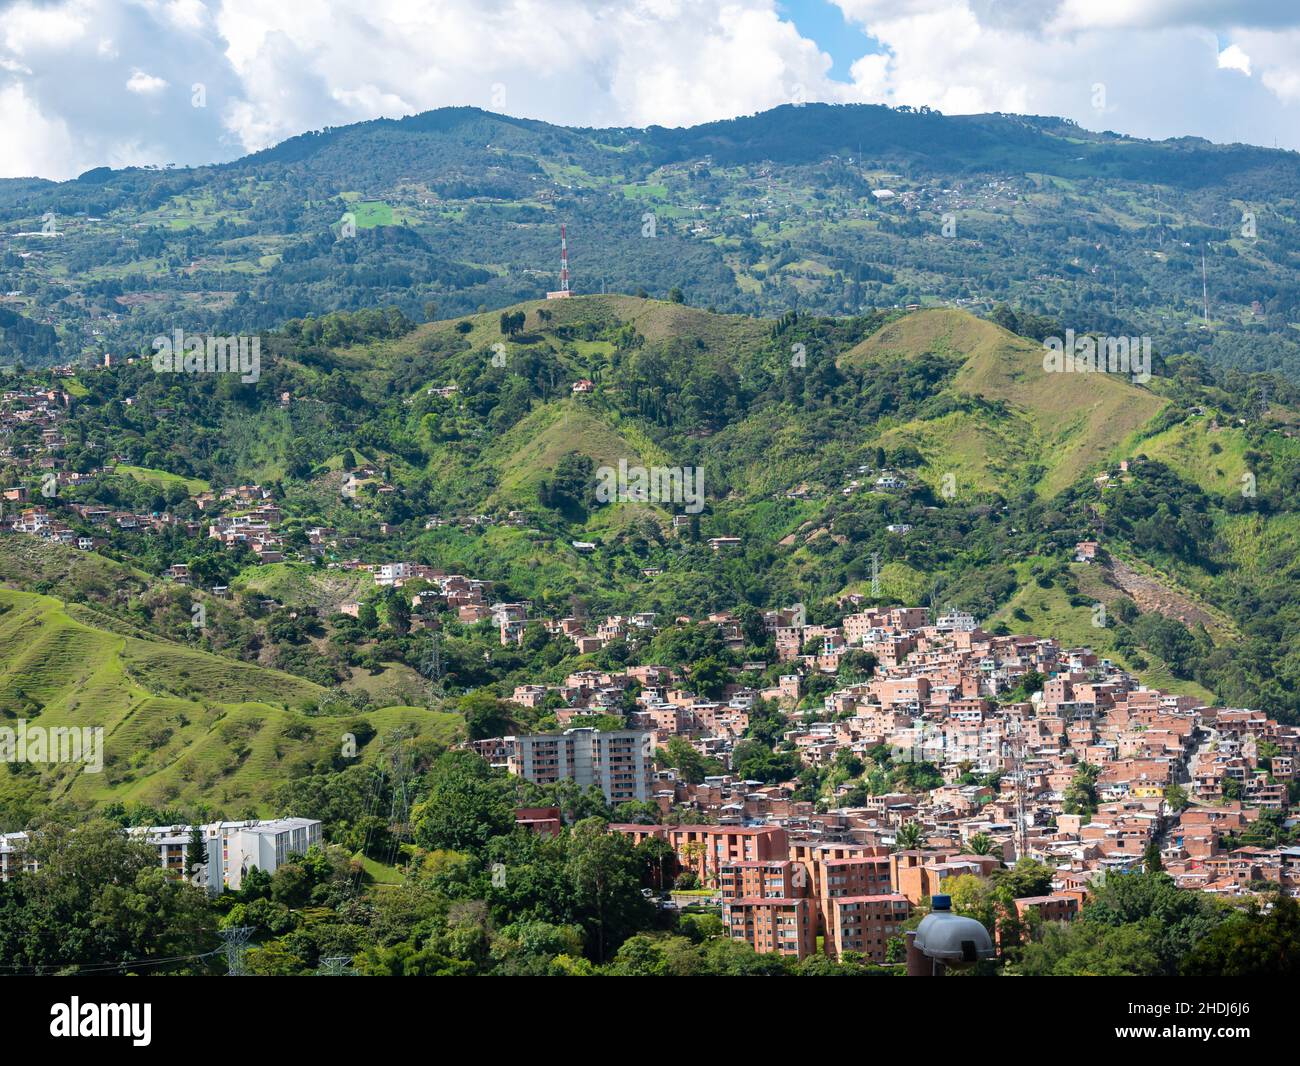 Vue aérienne de la ville de Medellin entourée de montagnes, de nombreux bâtiments, maisons, arbres dans un paysage magnifique Banque D'Images